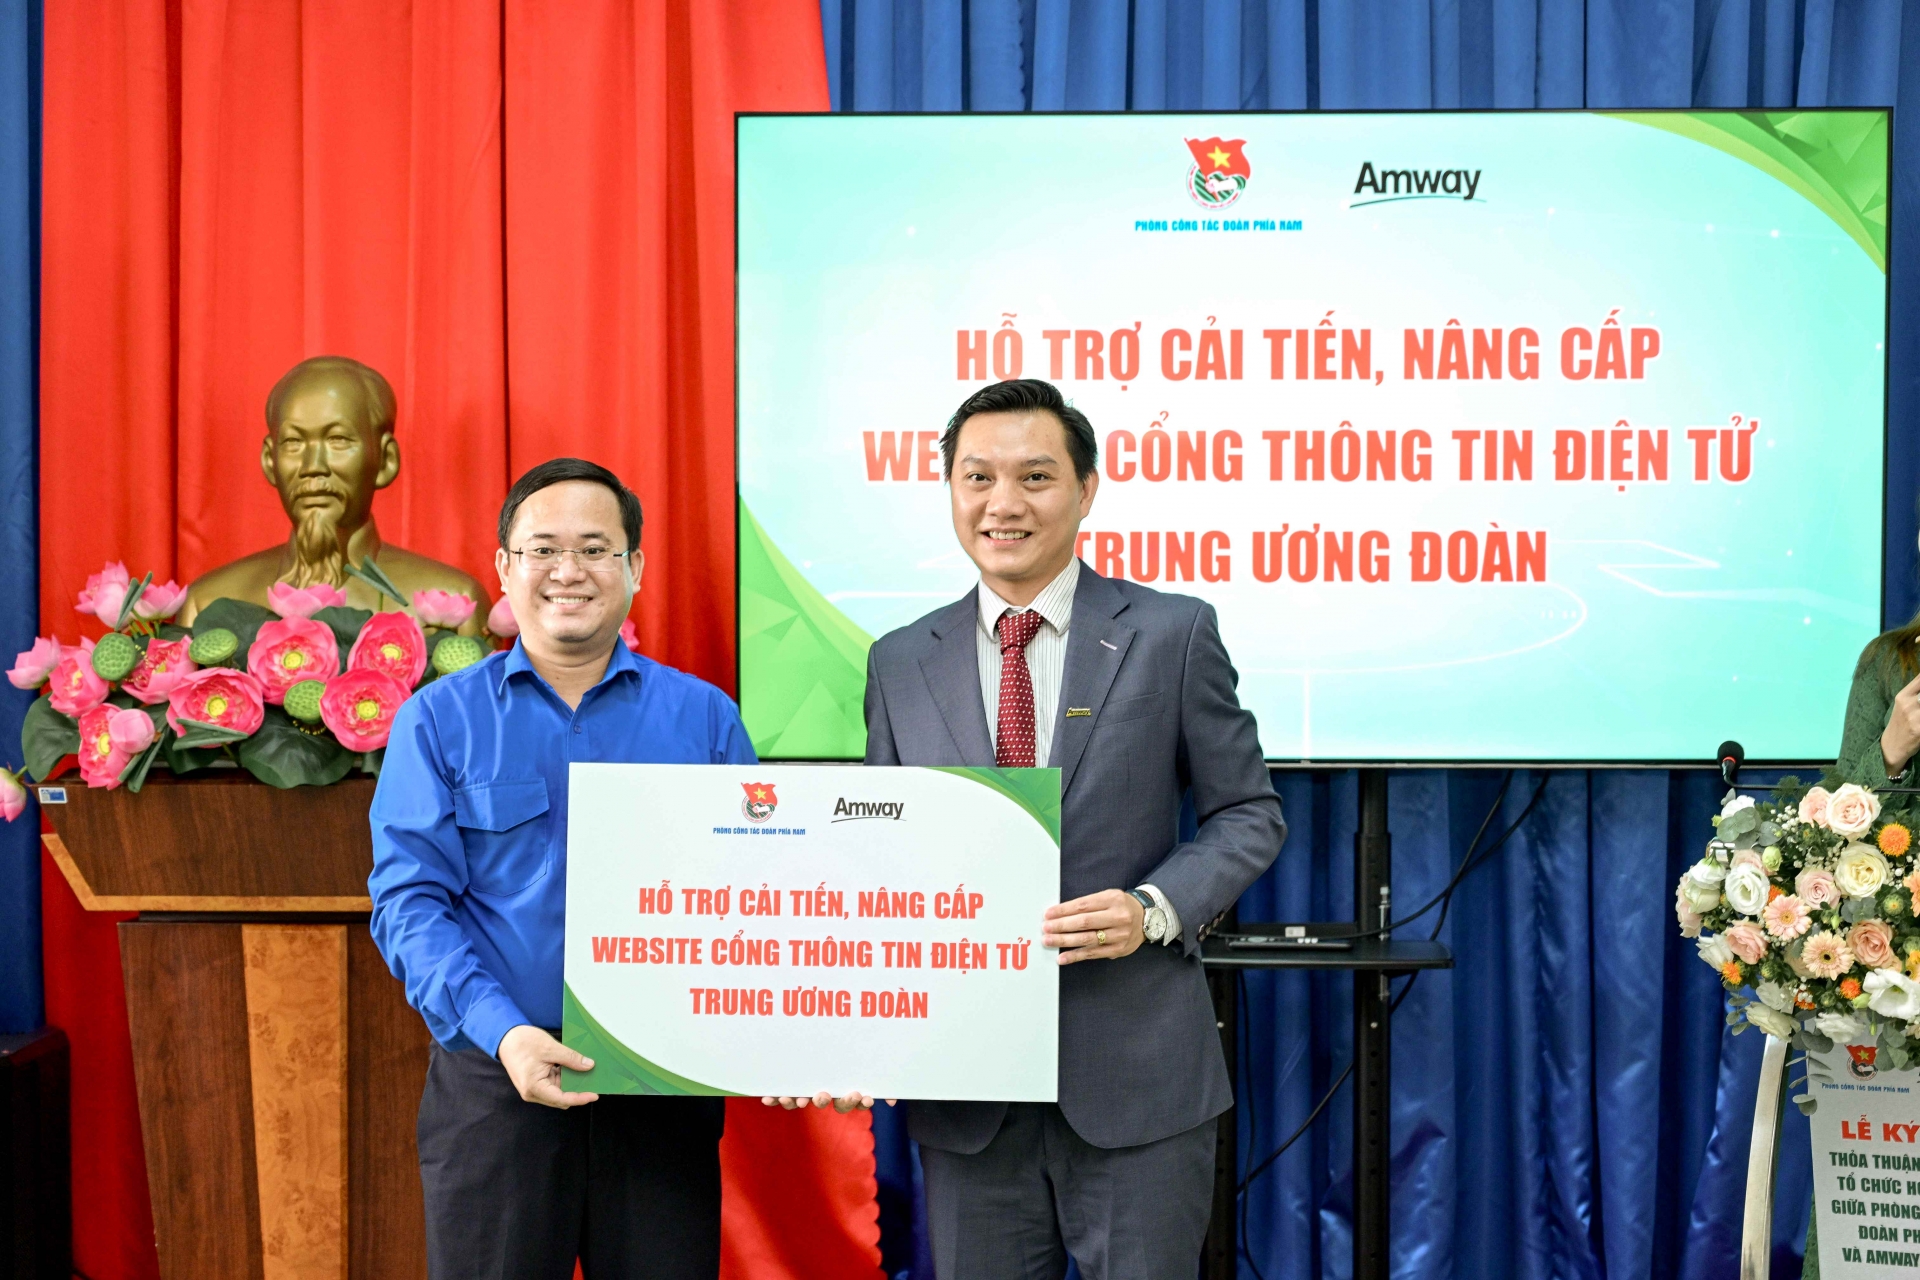 Amway Việt Nam hợp tác với Trung ương Đoàn Thanh niên Cộng sản Hồ Chí Minh thực hiện hoạt động cộng đồng trên toàn quốc